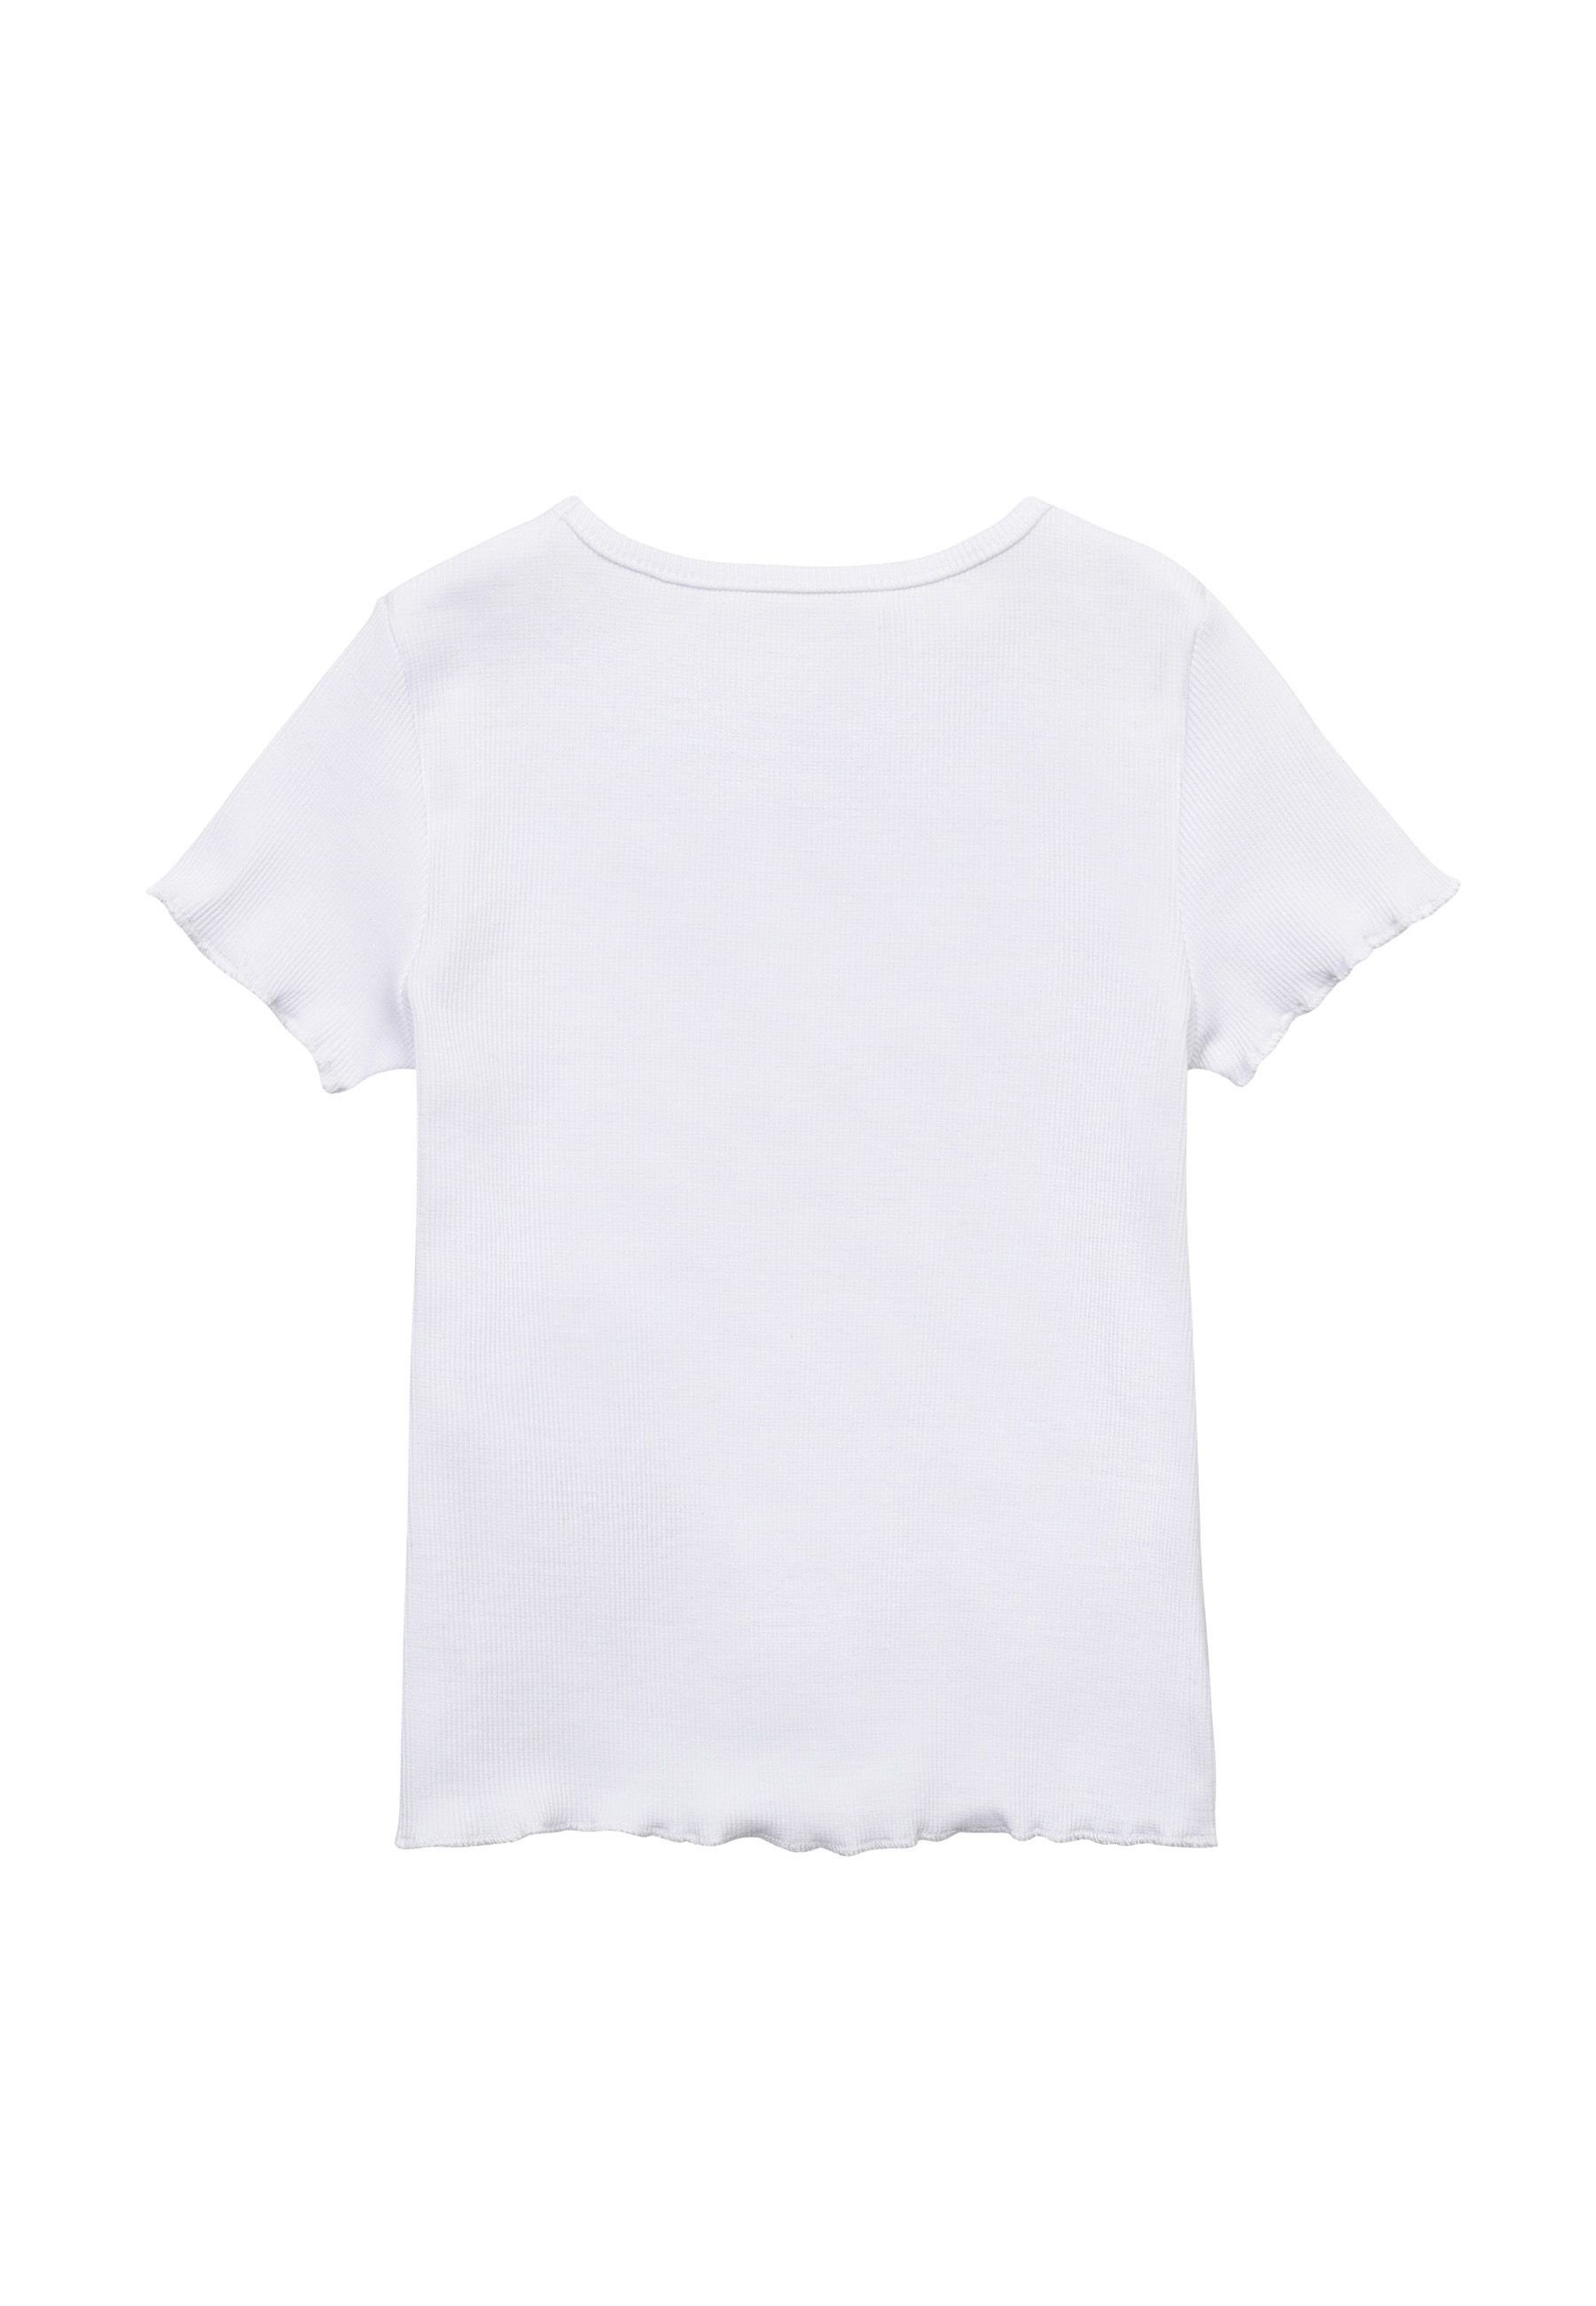 T-Shirt T-Shirt Einfaches Sommer MINOTI Weiß (1y-14y)